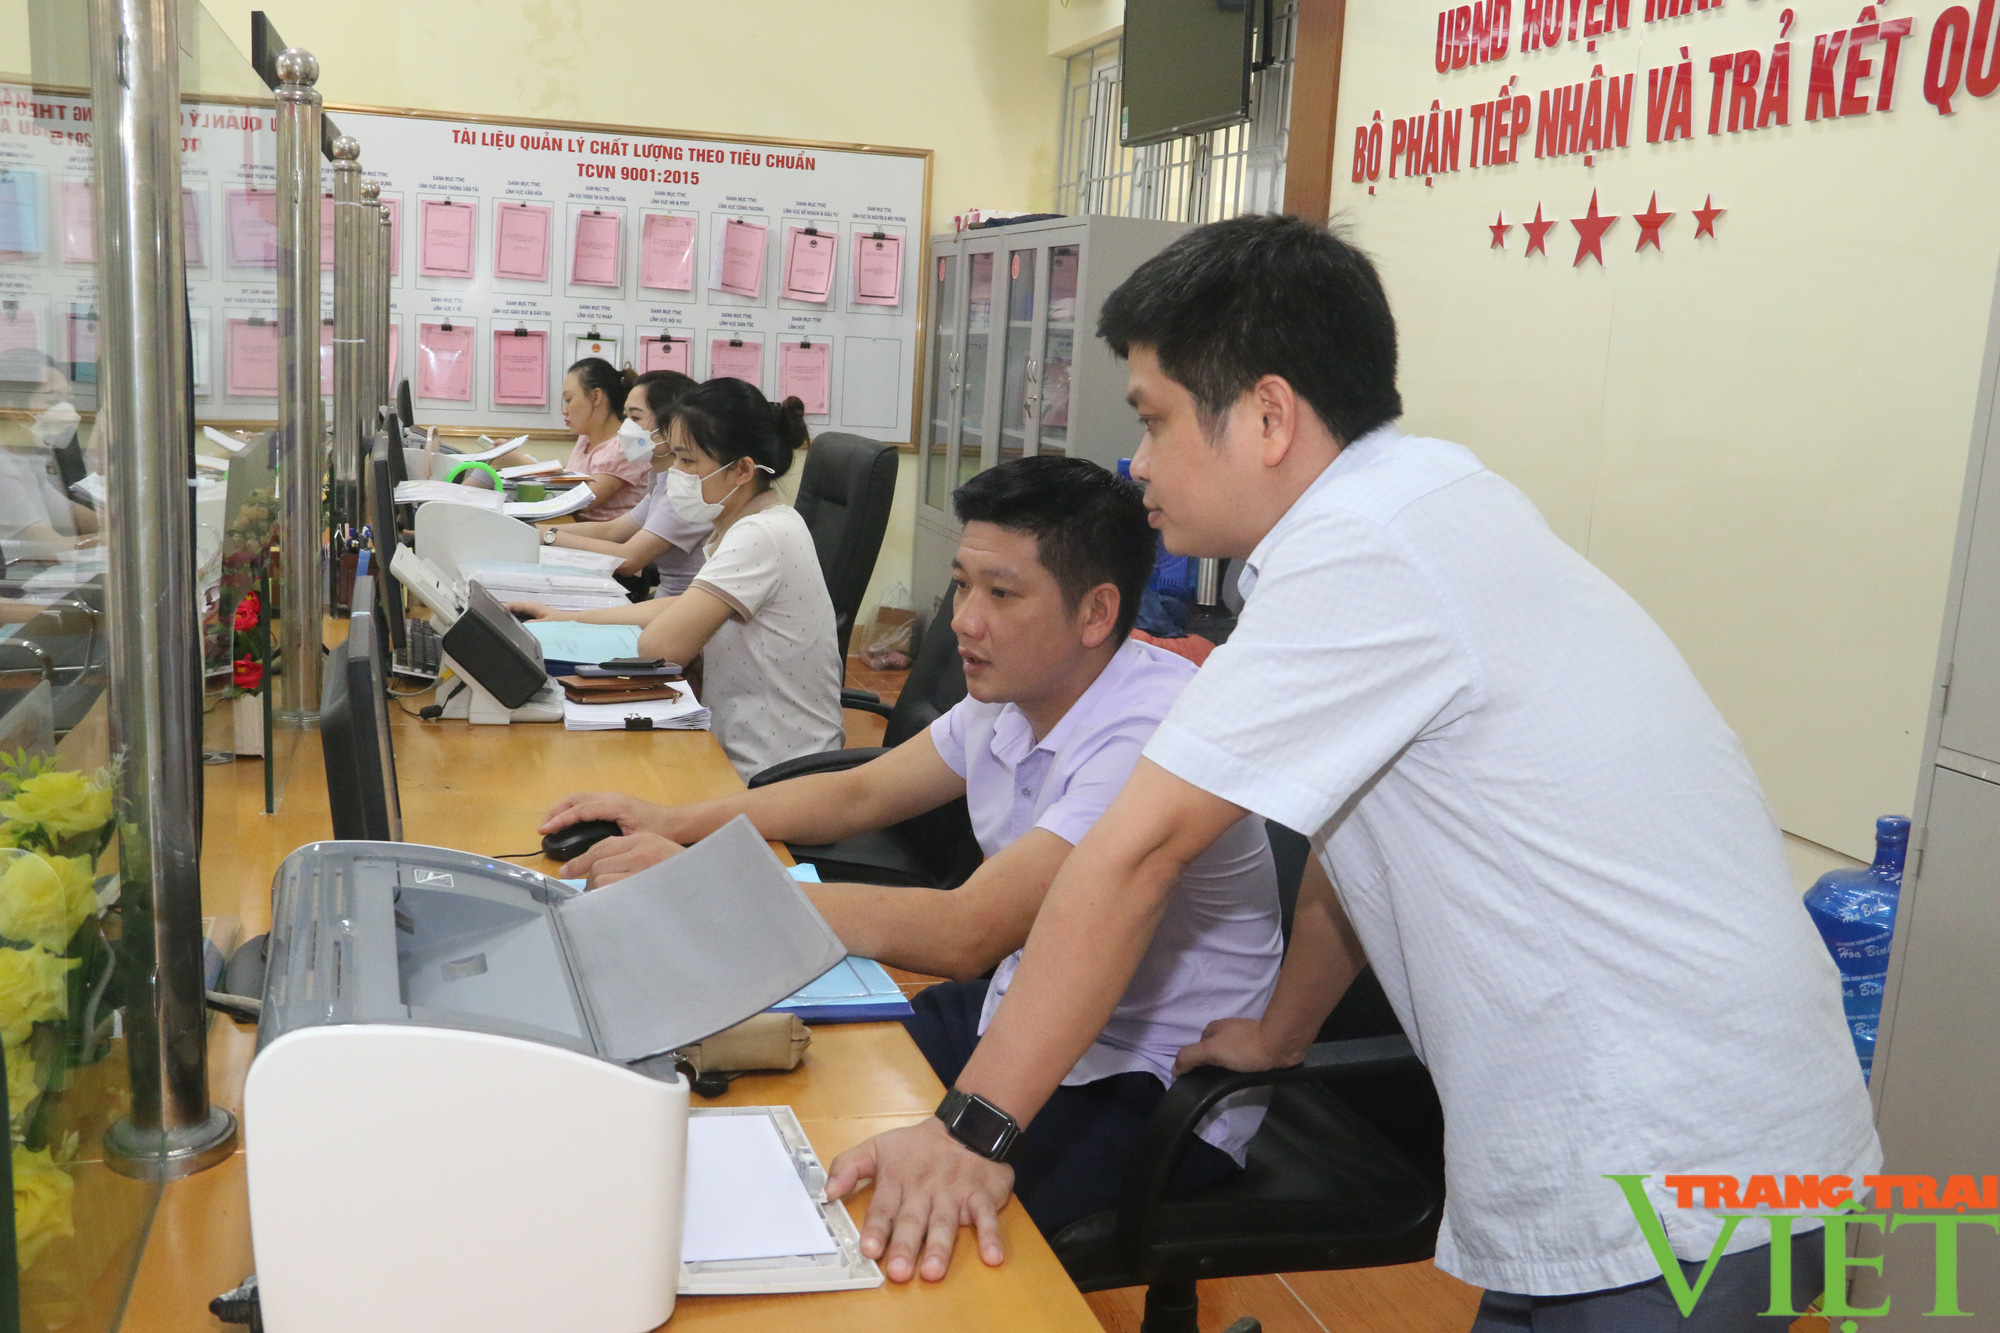 Huyện Mai Châu: Hướng đến cải cách hành chính dân chủ, hiện đại - Ảnh 4.